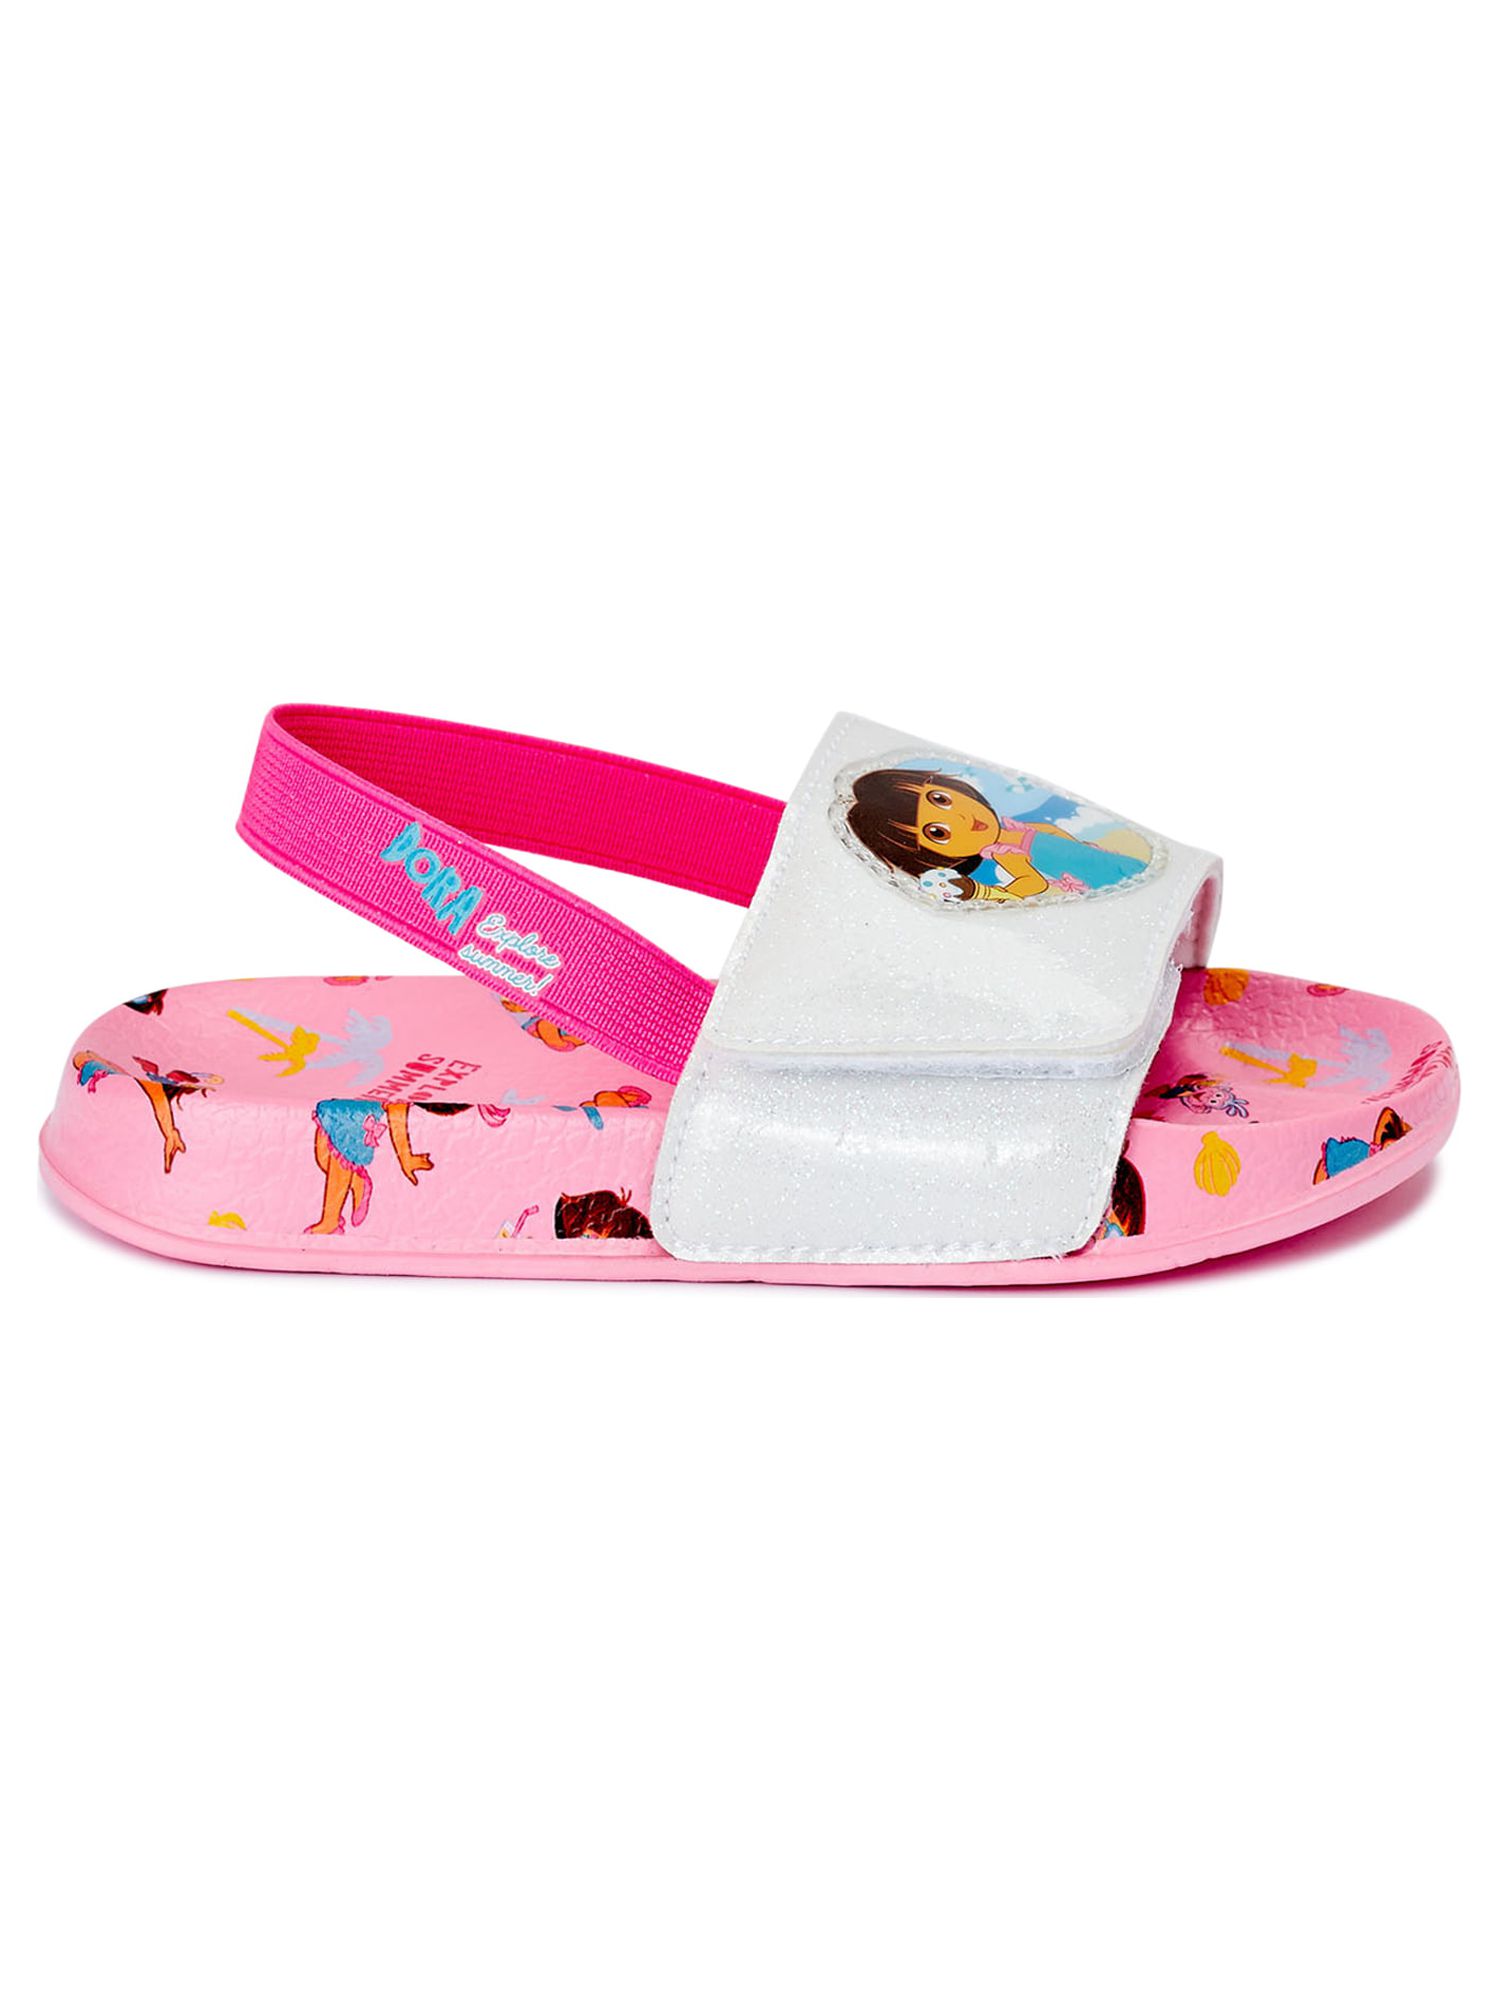 Dora the Explorer Toddler Girls' Beach Slide Sandals - image 2 of 6